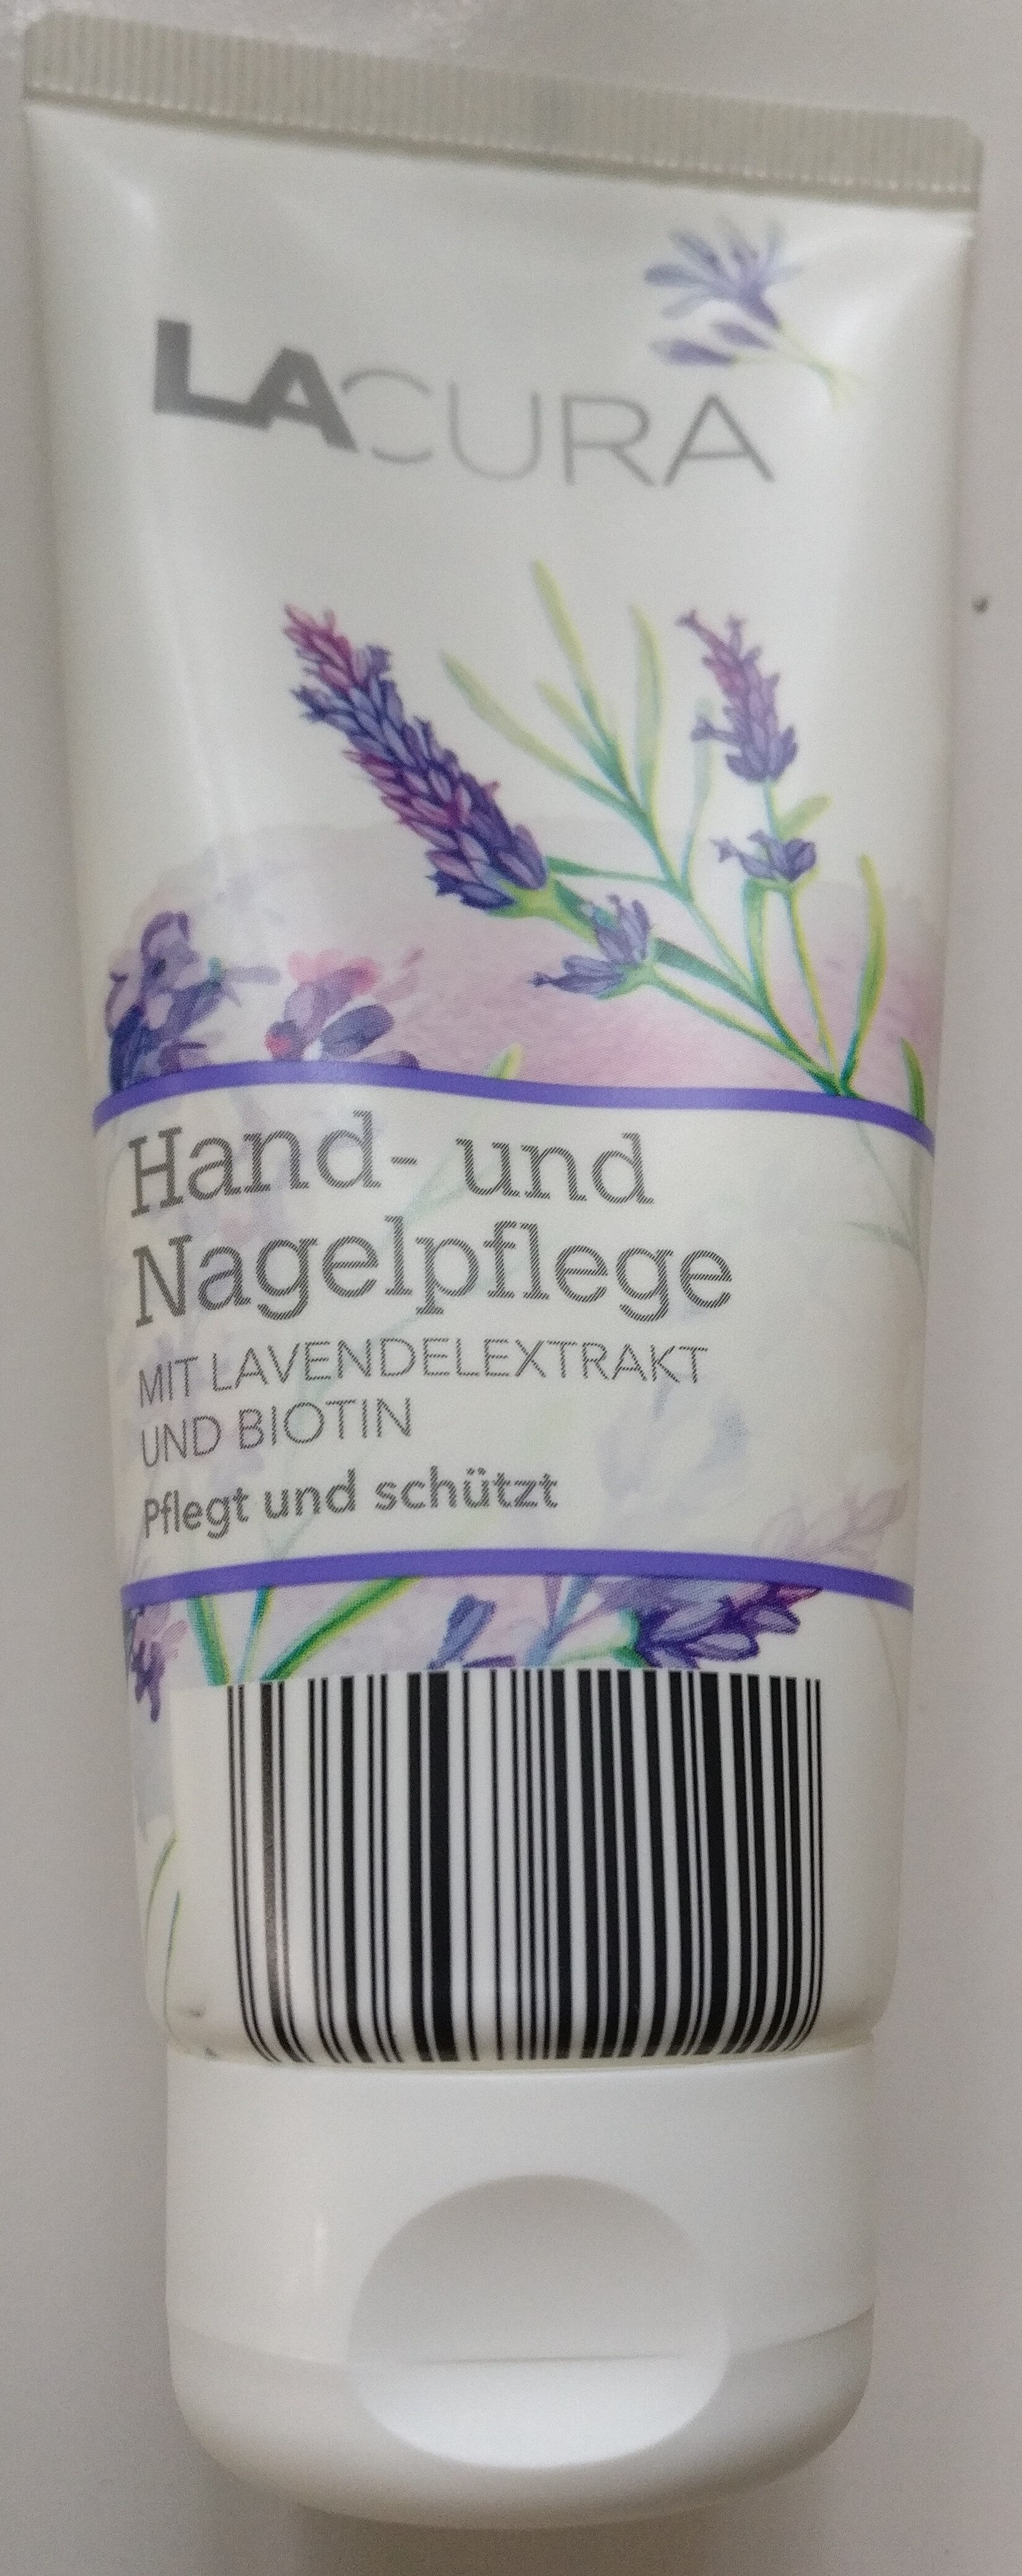 Hand- und Nagelpflege - Produto - de